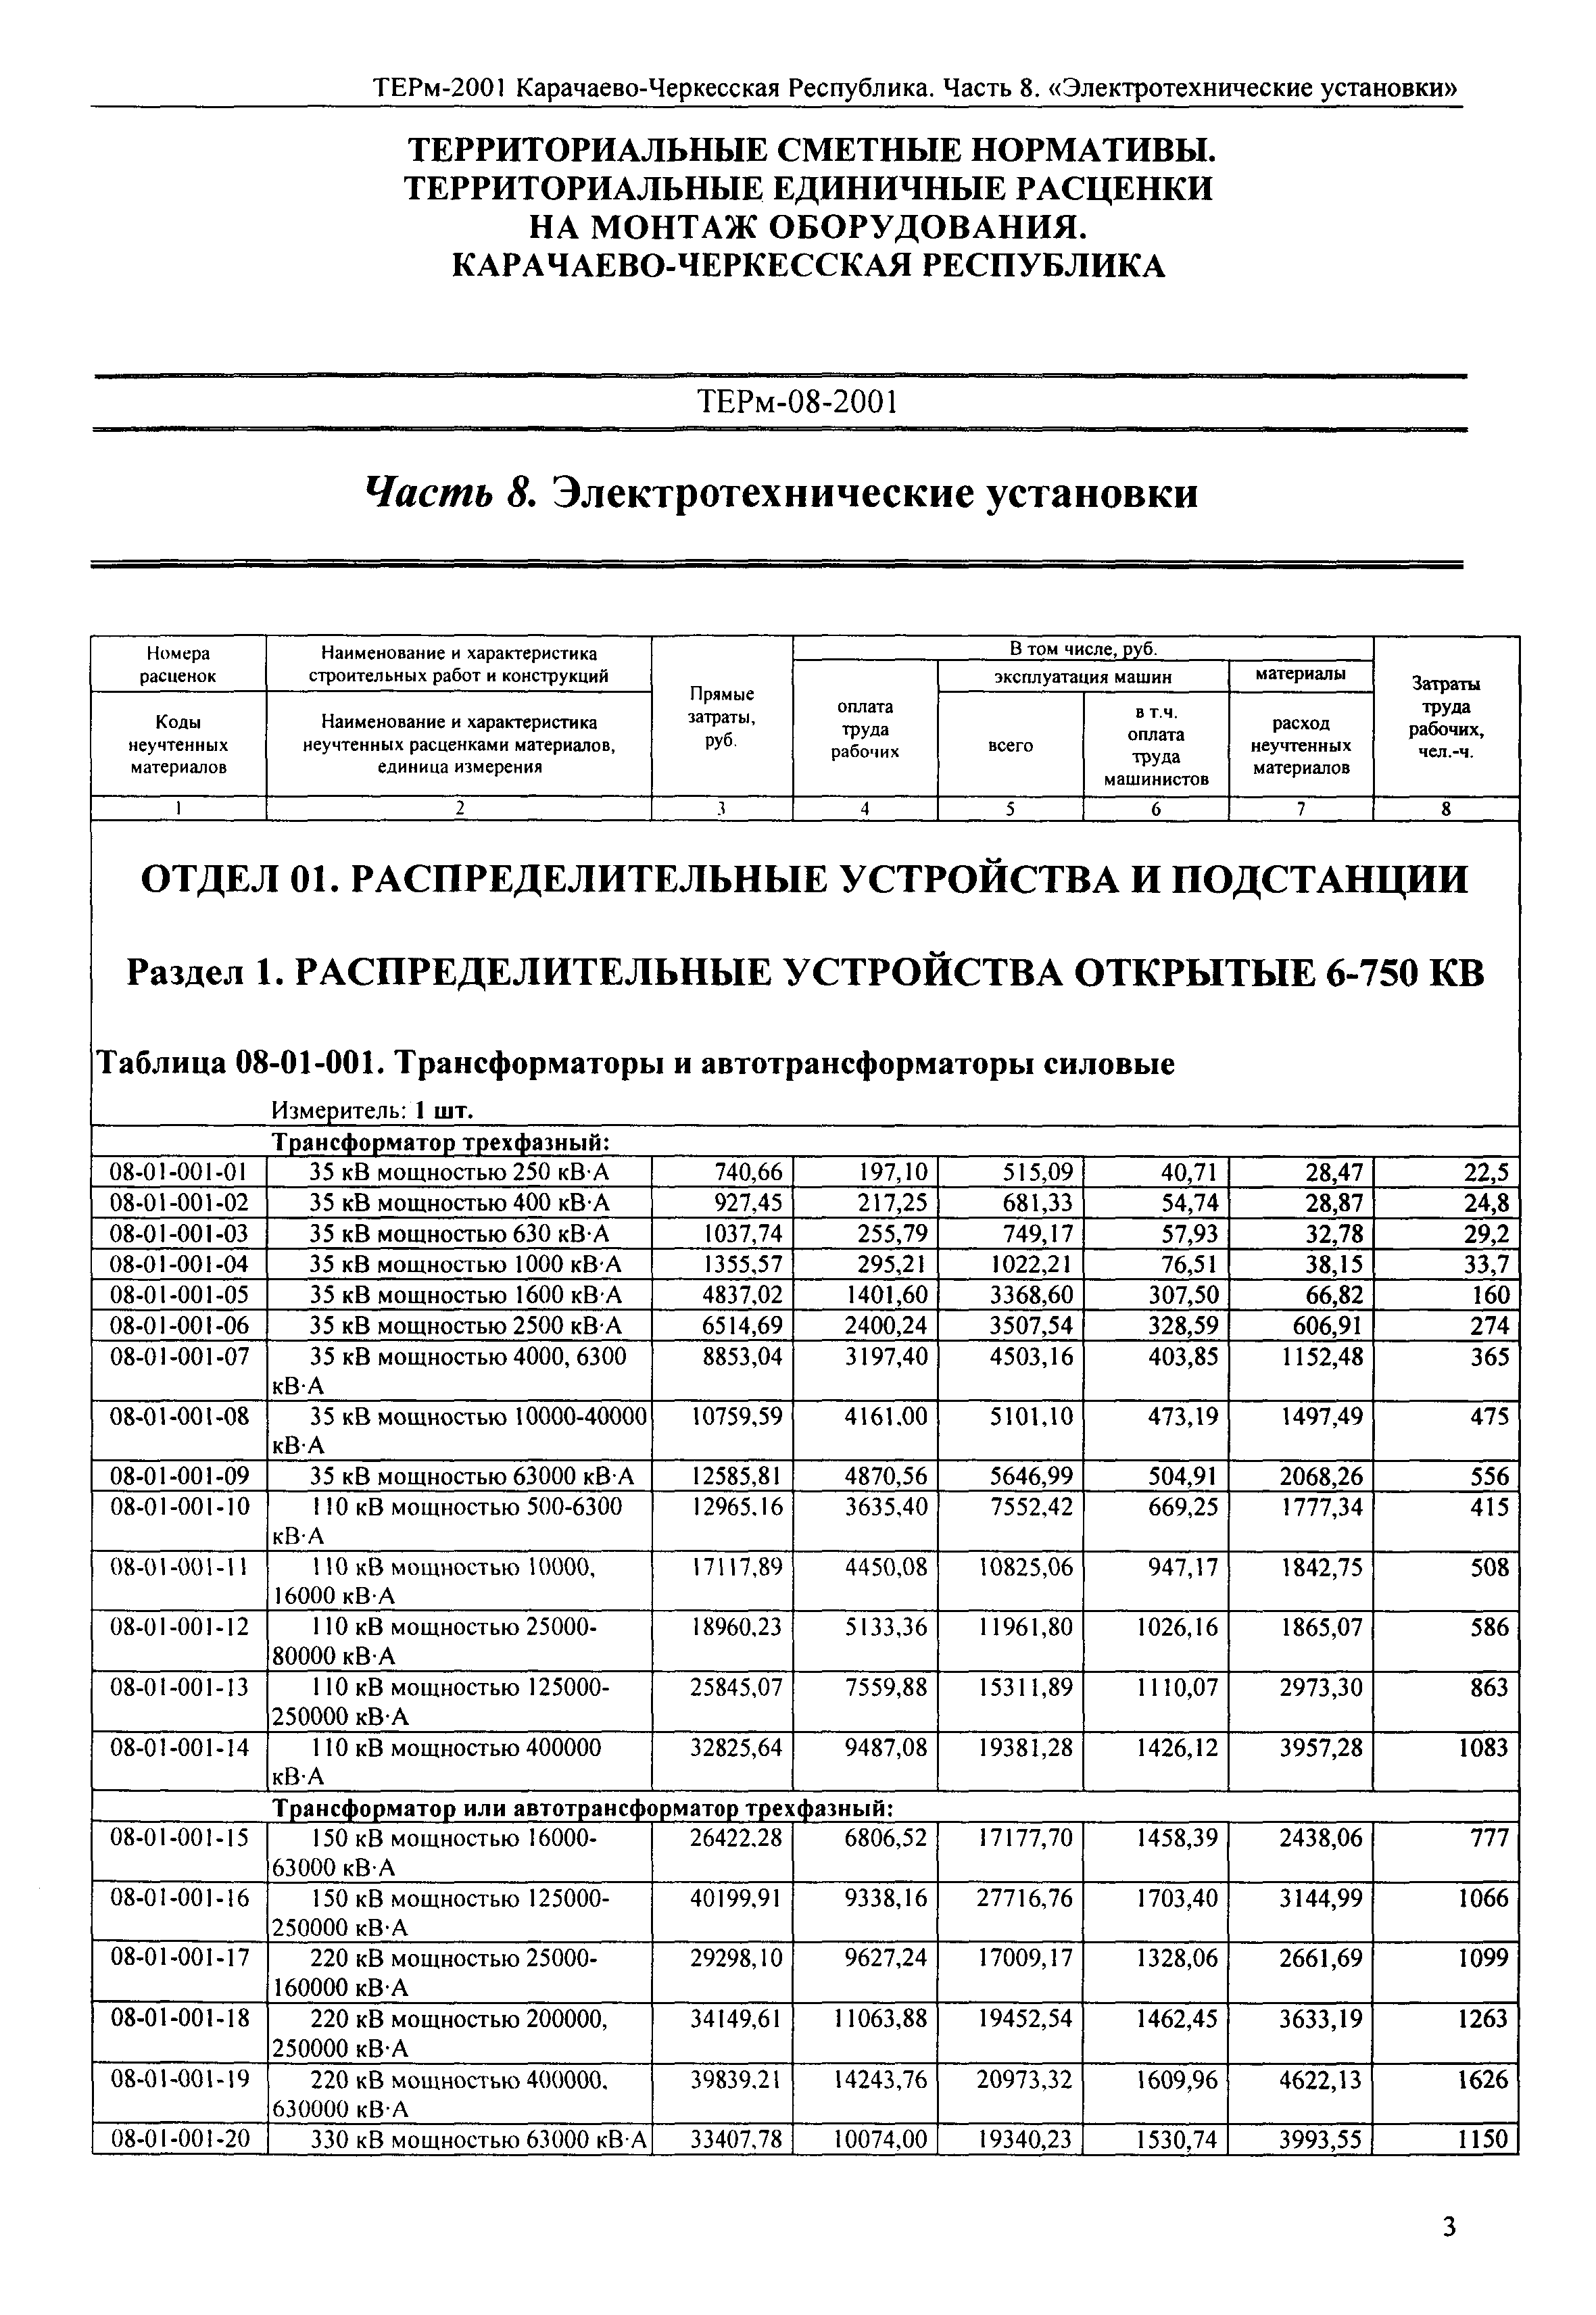 ТЕРм Карачаево-Черкесская Республика 08-2001